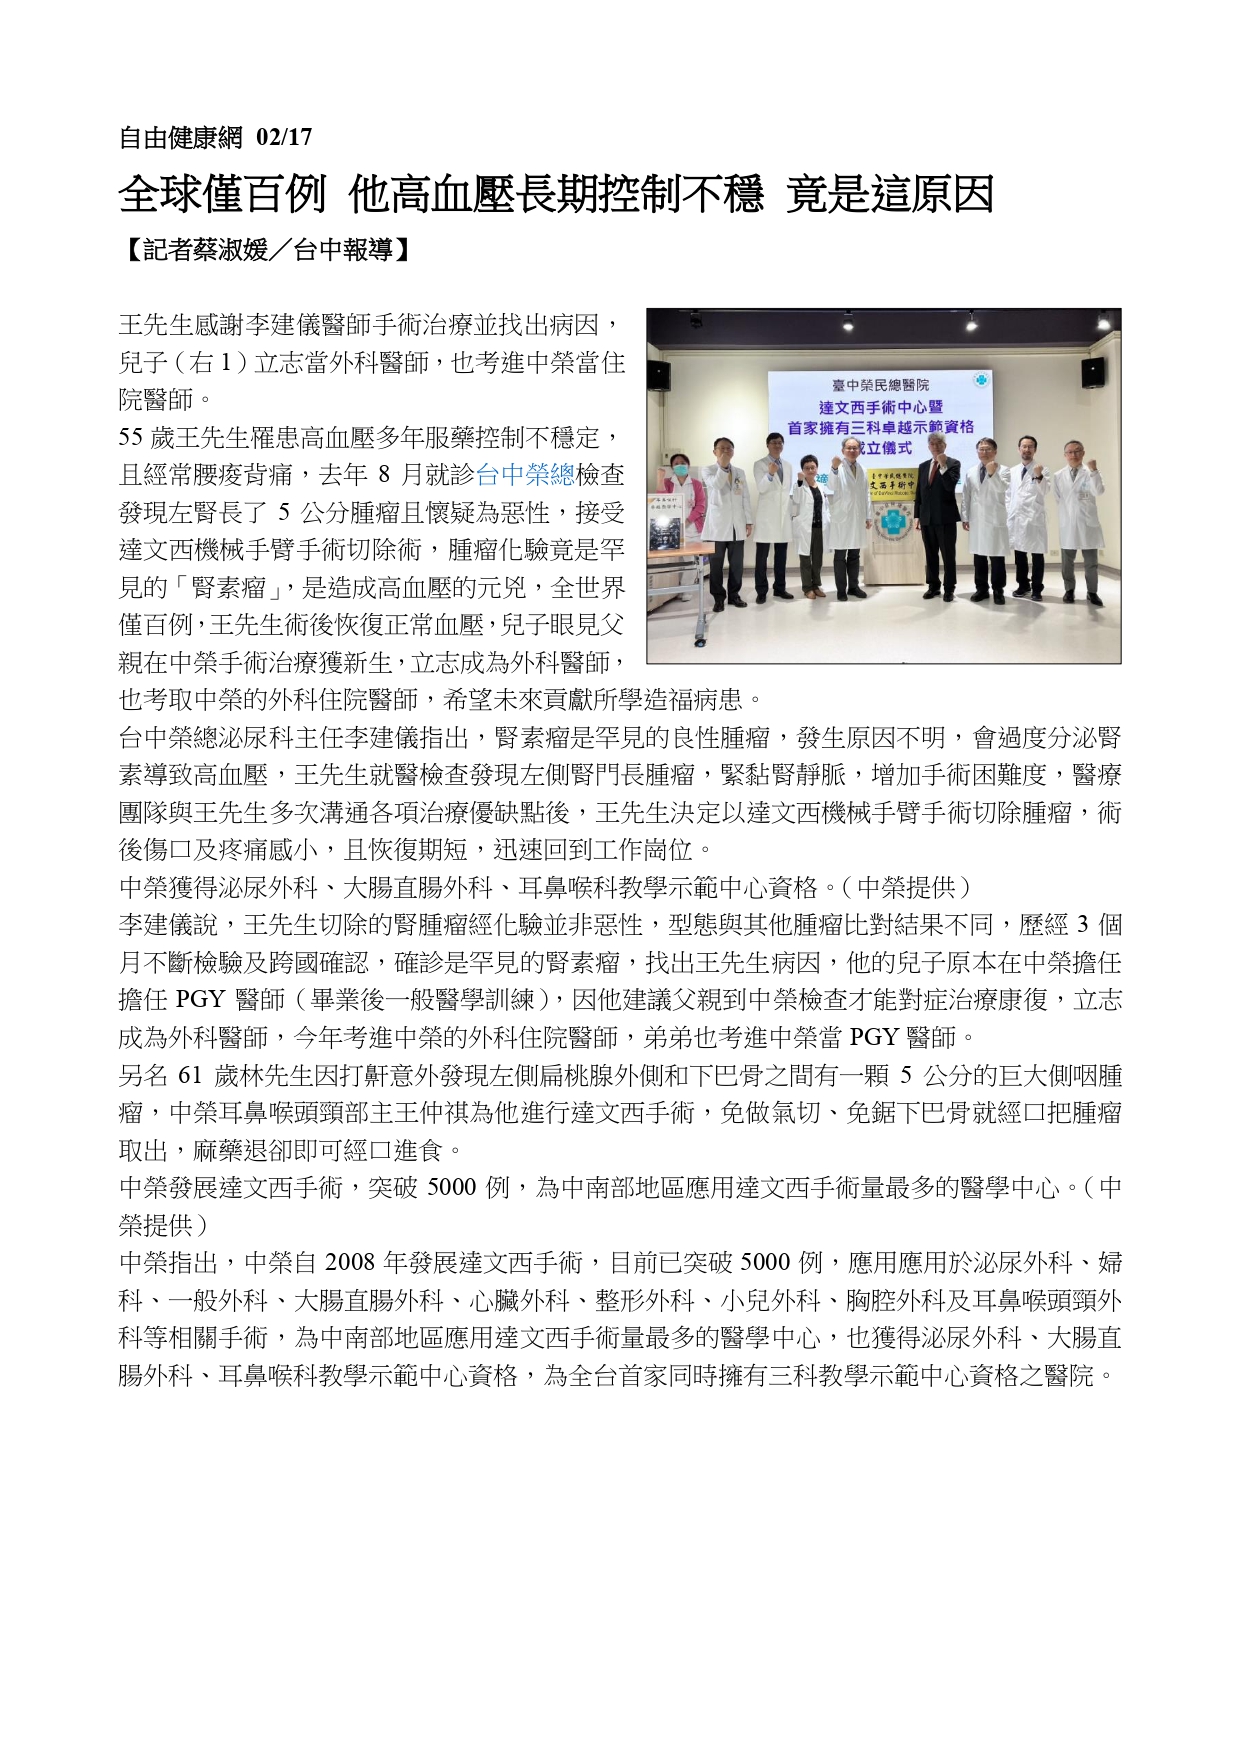 臺中榮總成立達文西手術中心 全國首家擁有三科教學示範中心資格